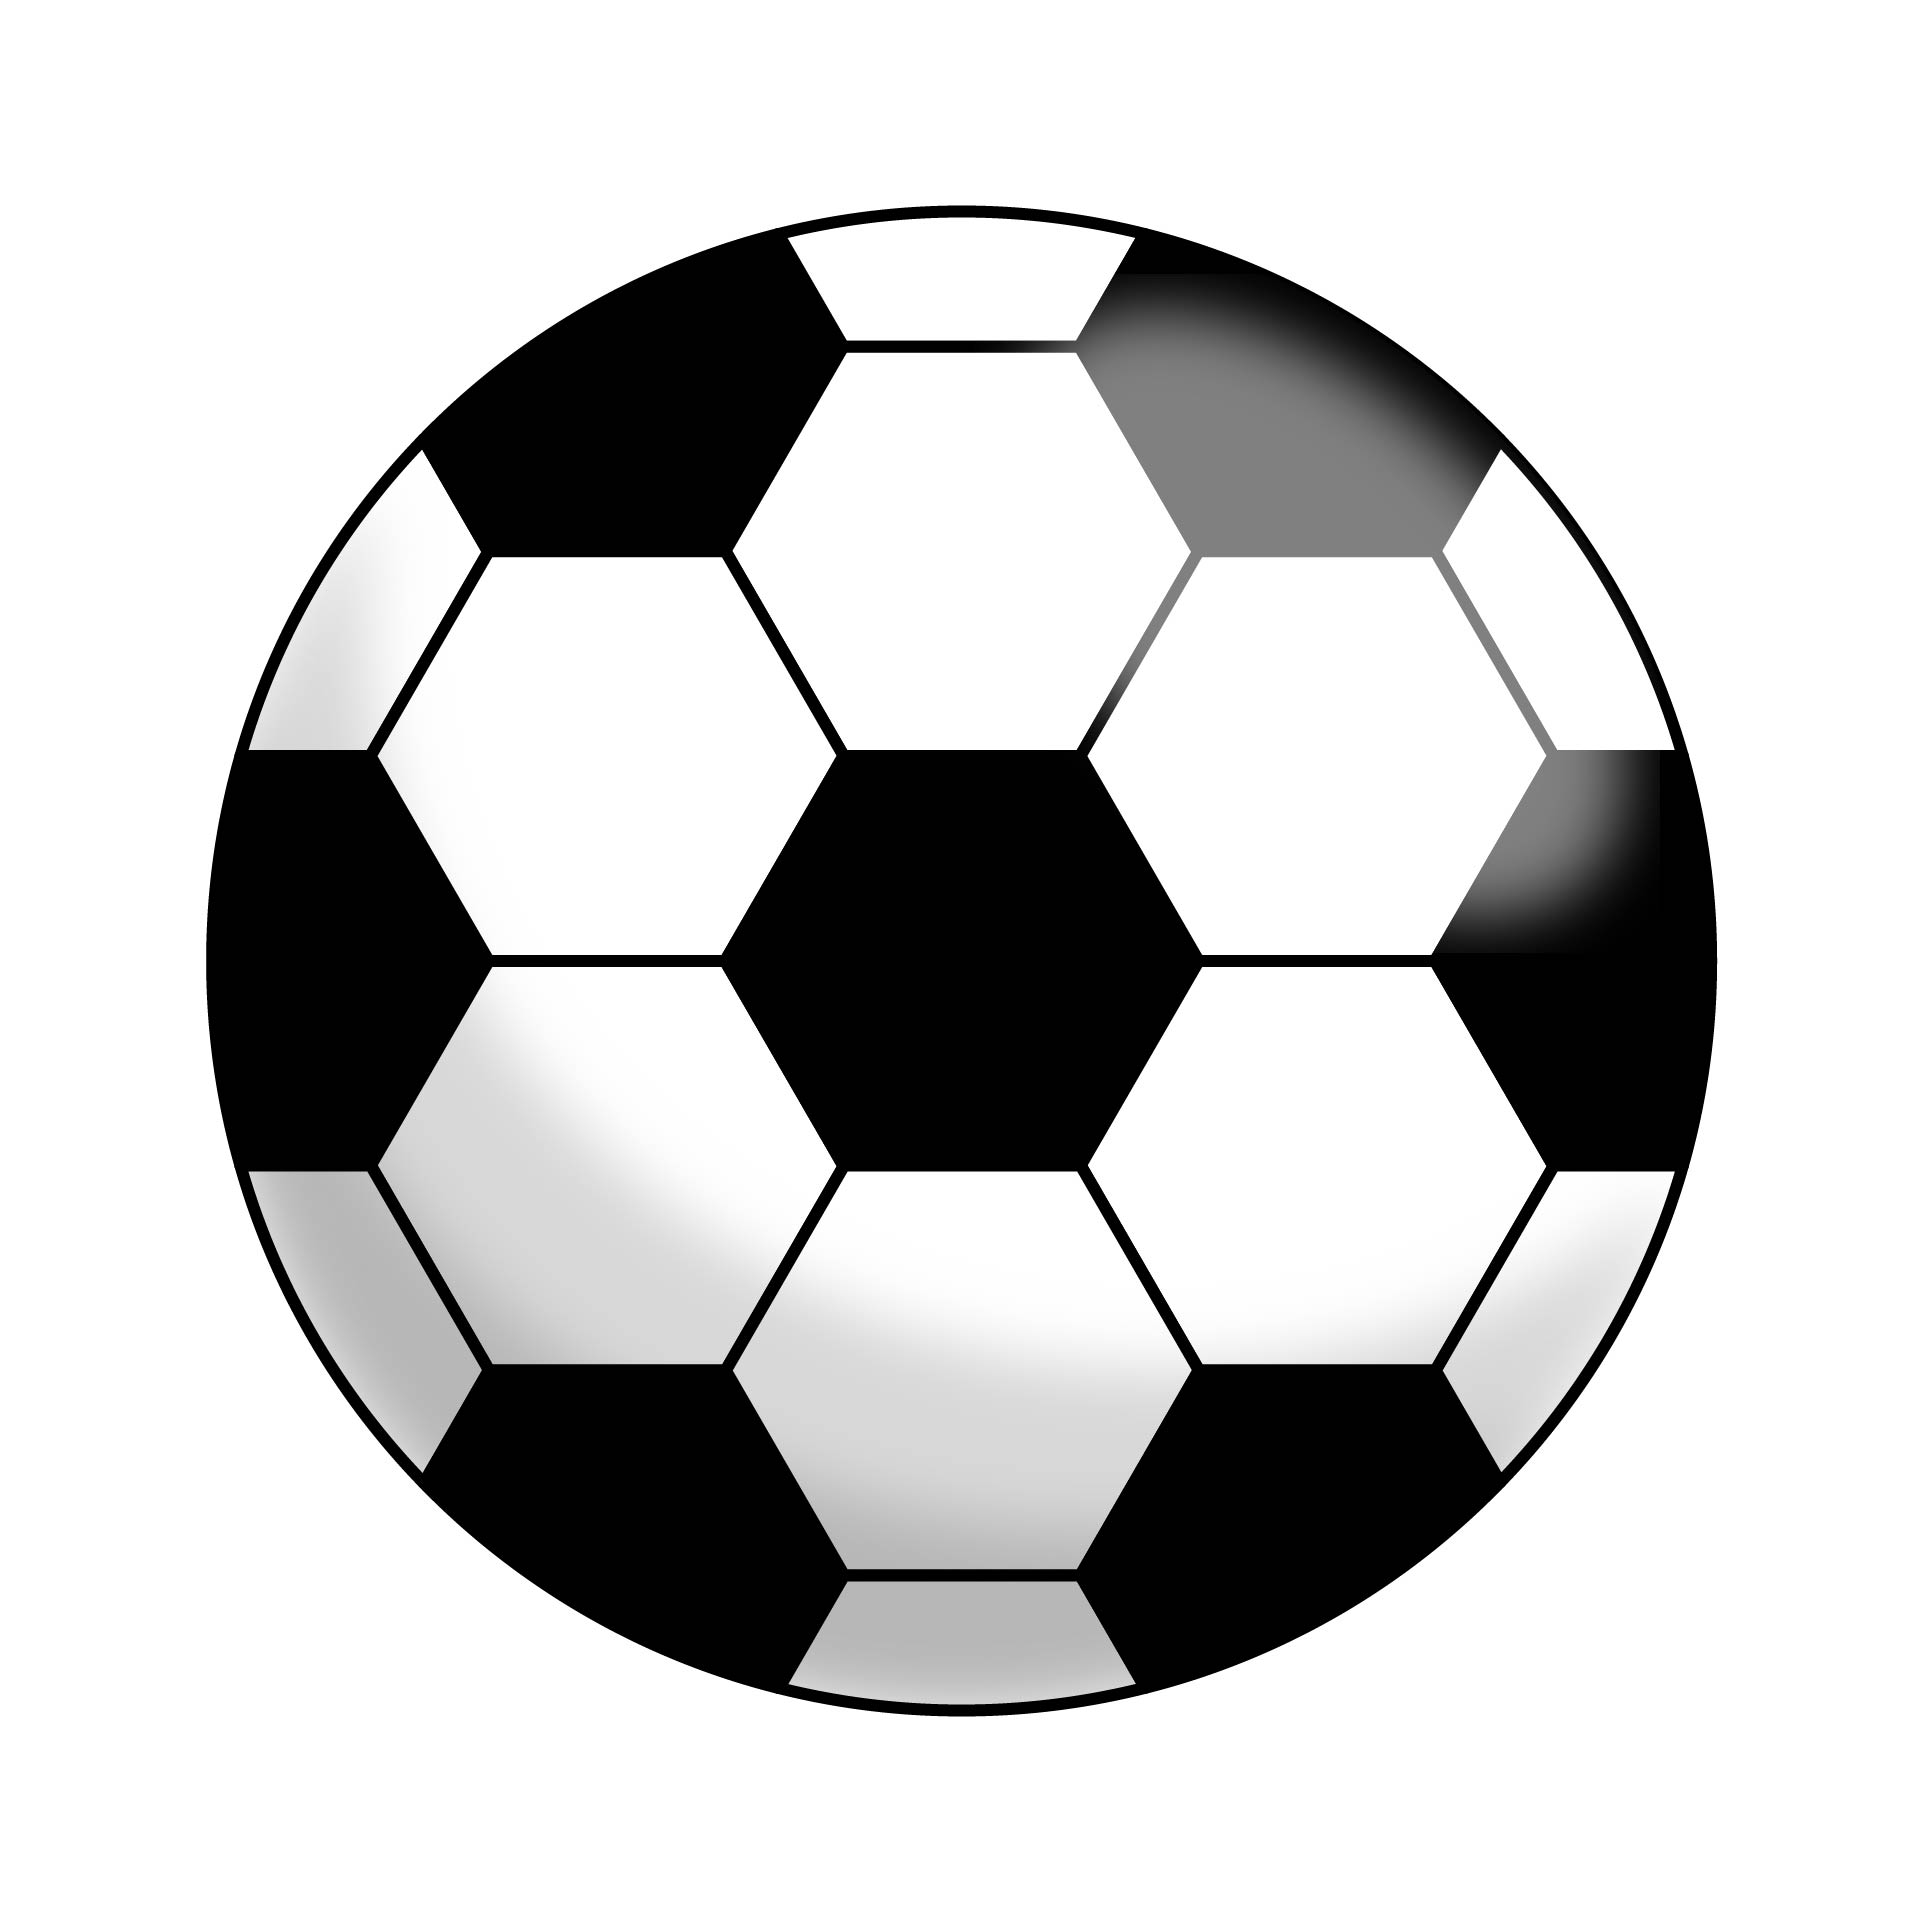 Printable Soccer Ball Template Printable Templates